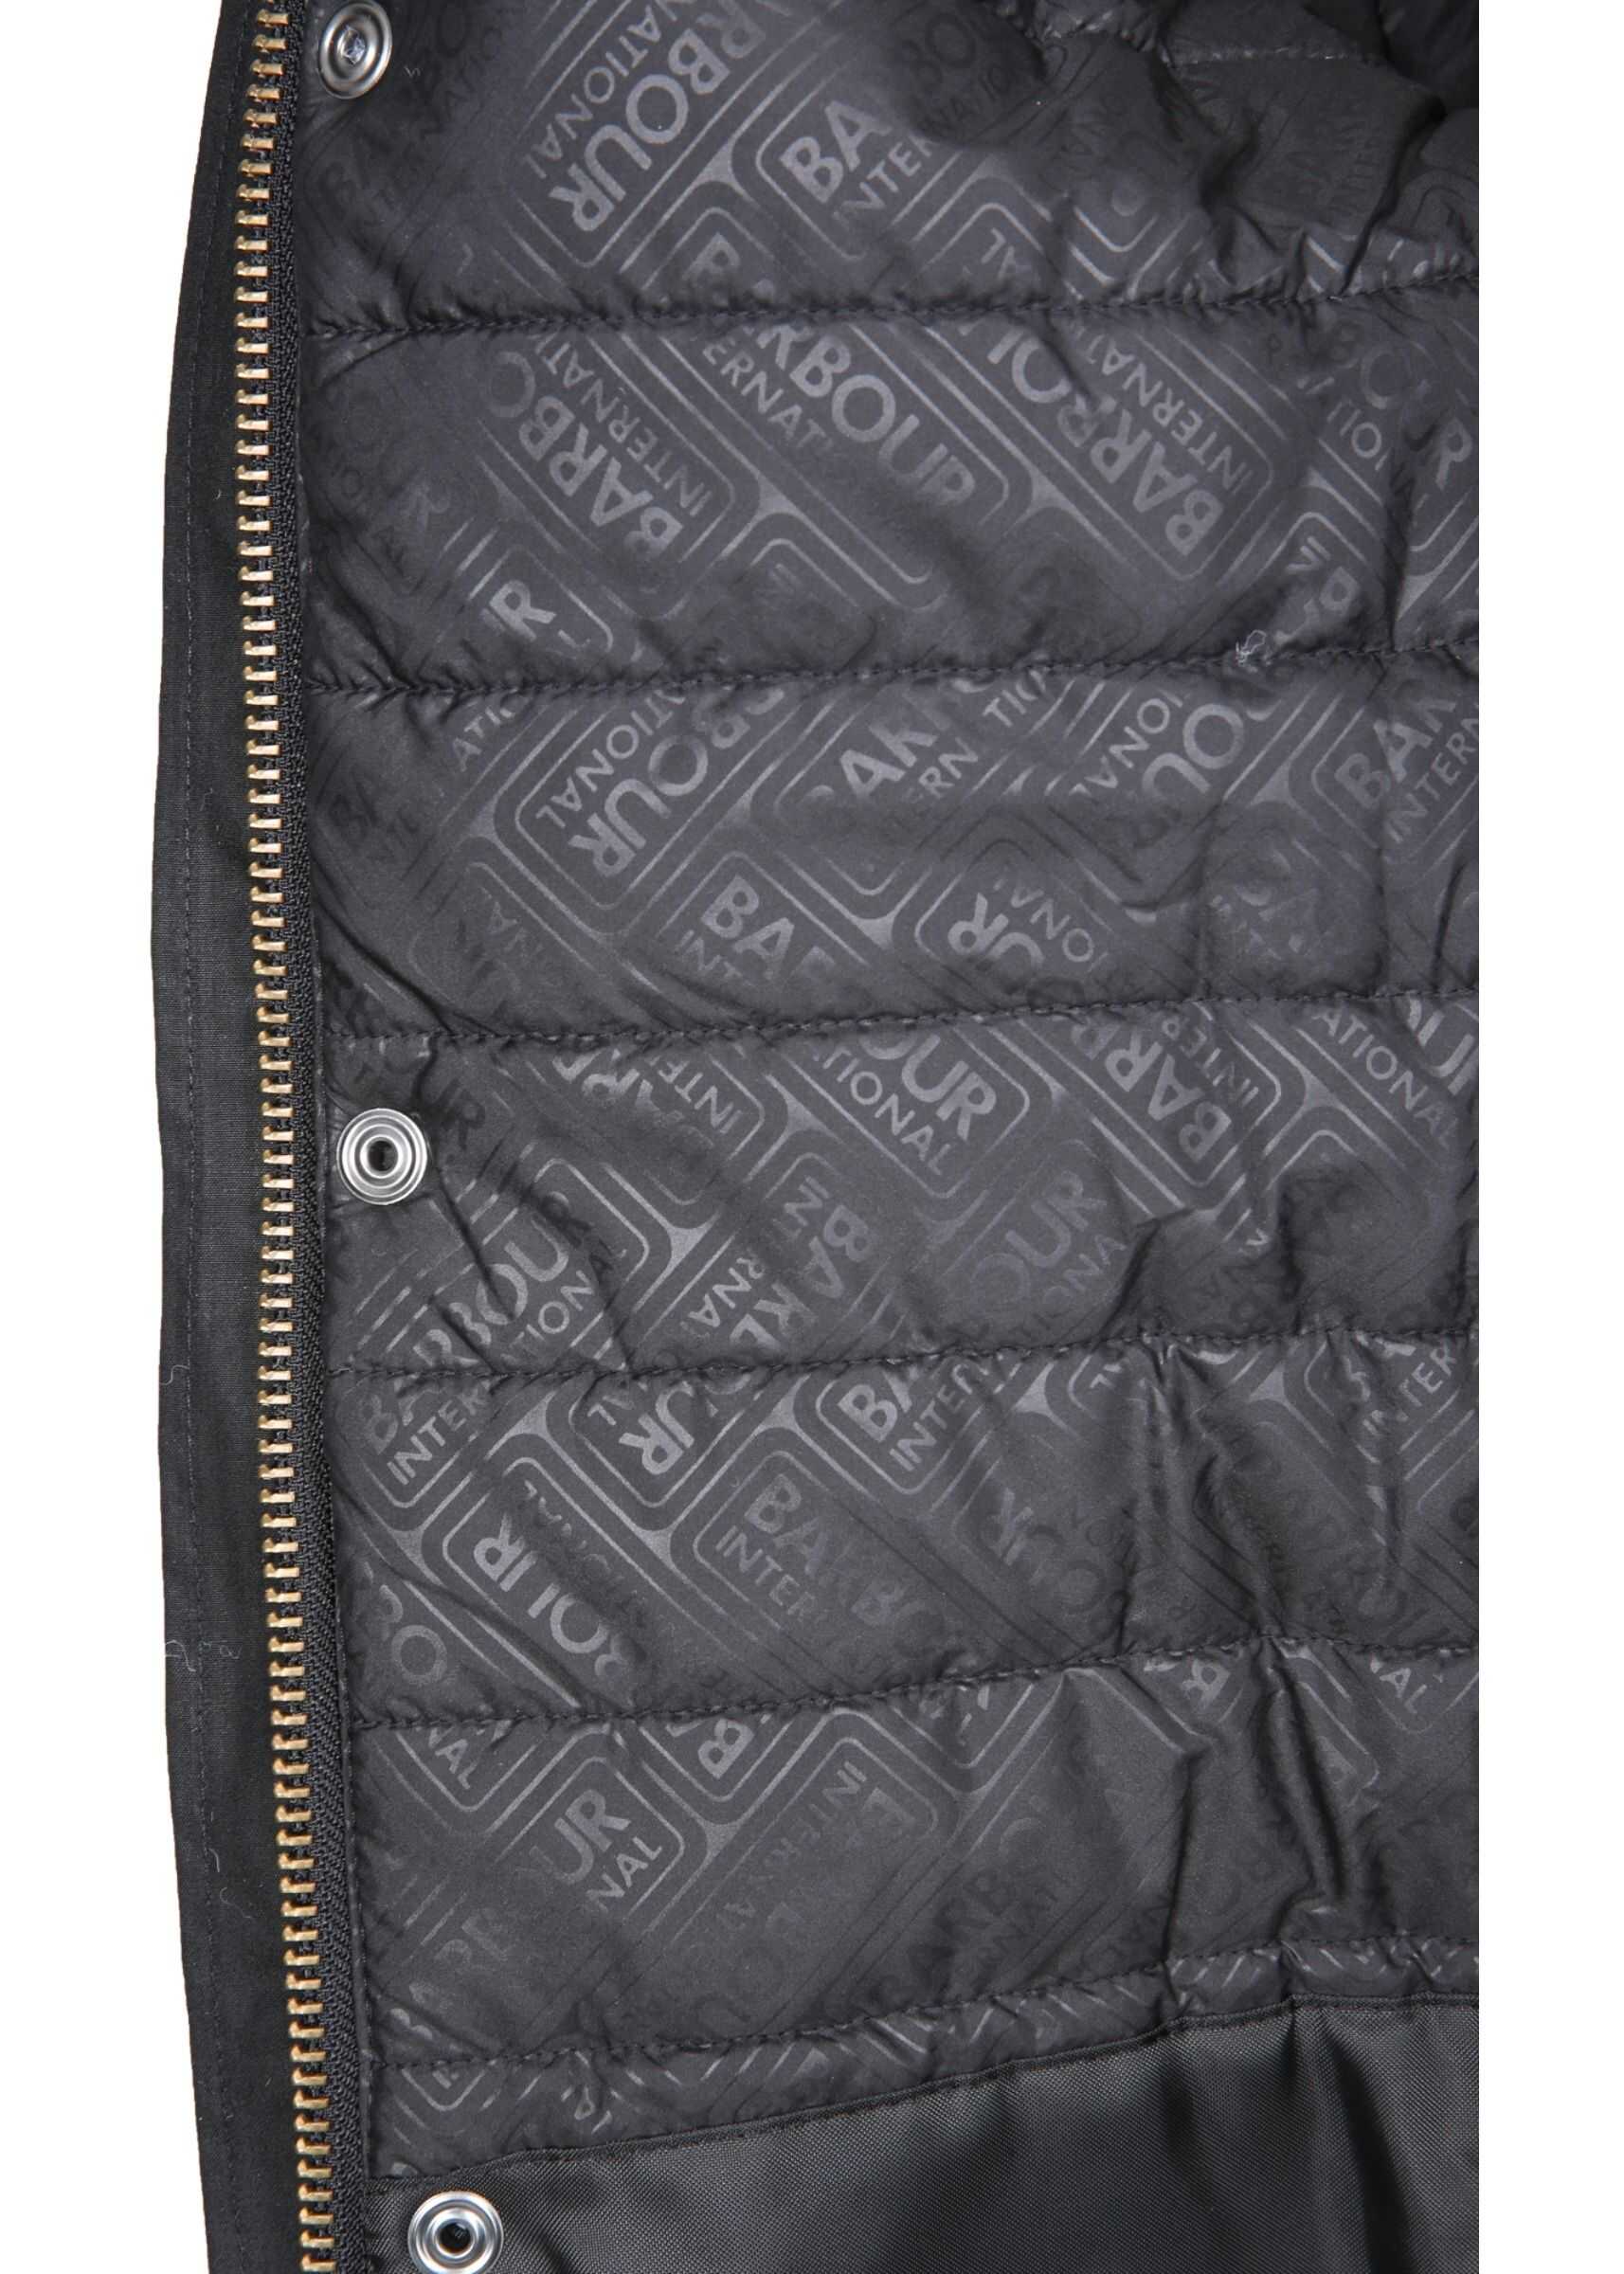 Barbour International Jacket BLACK